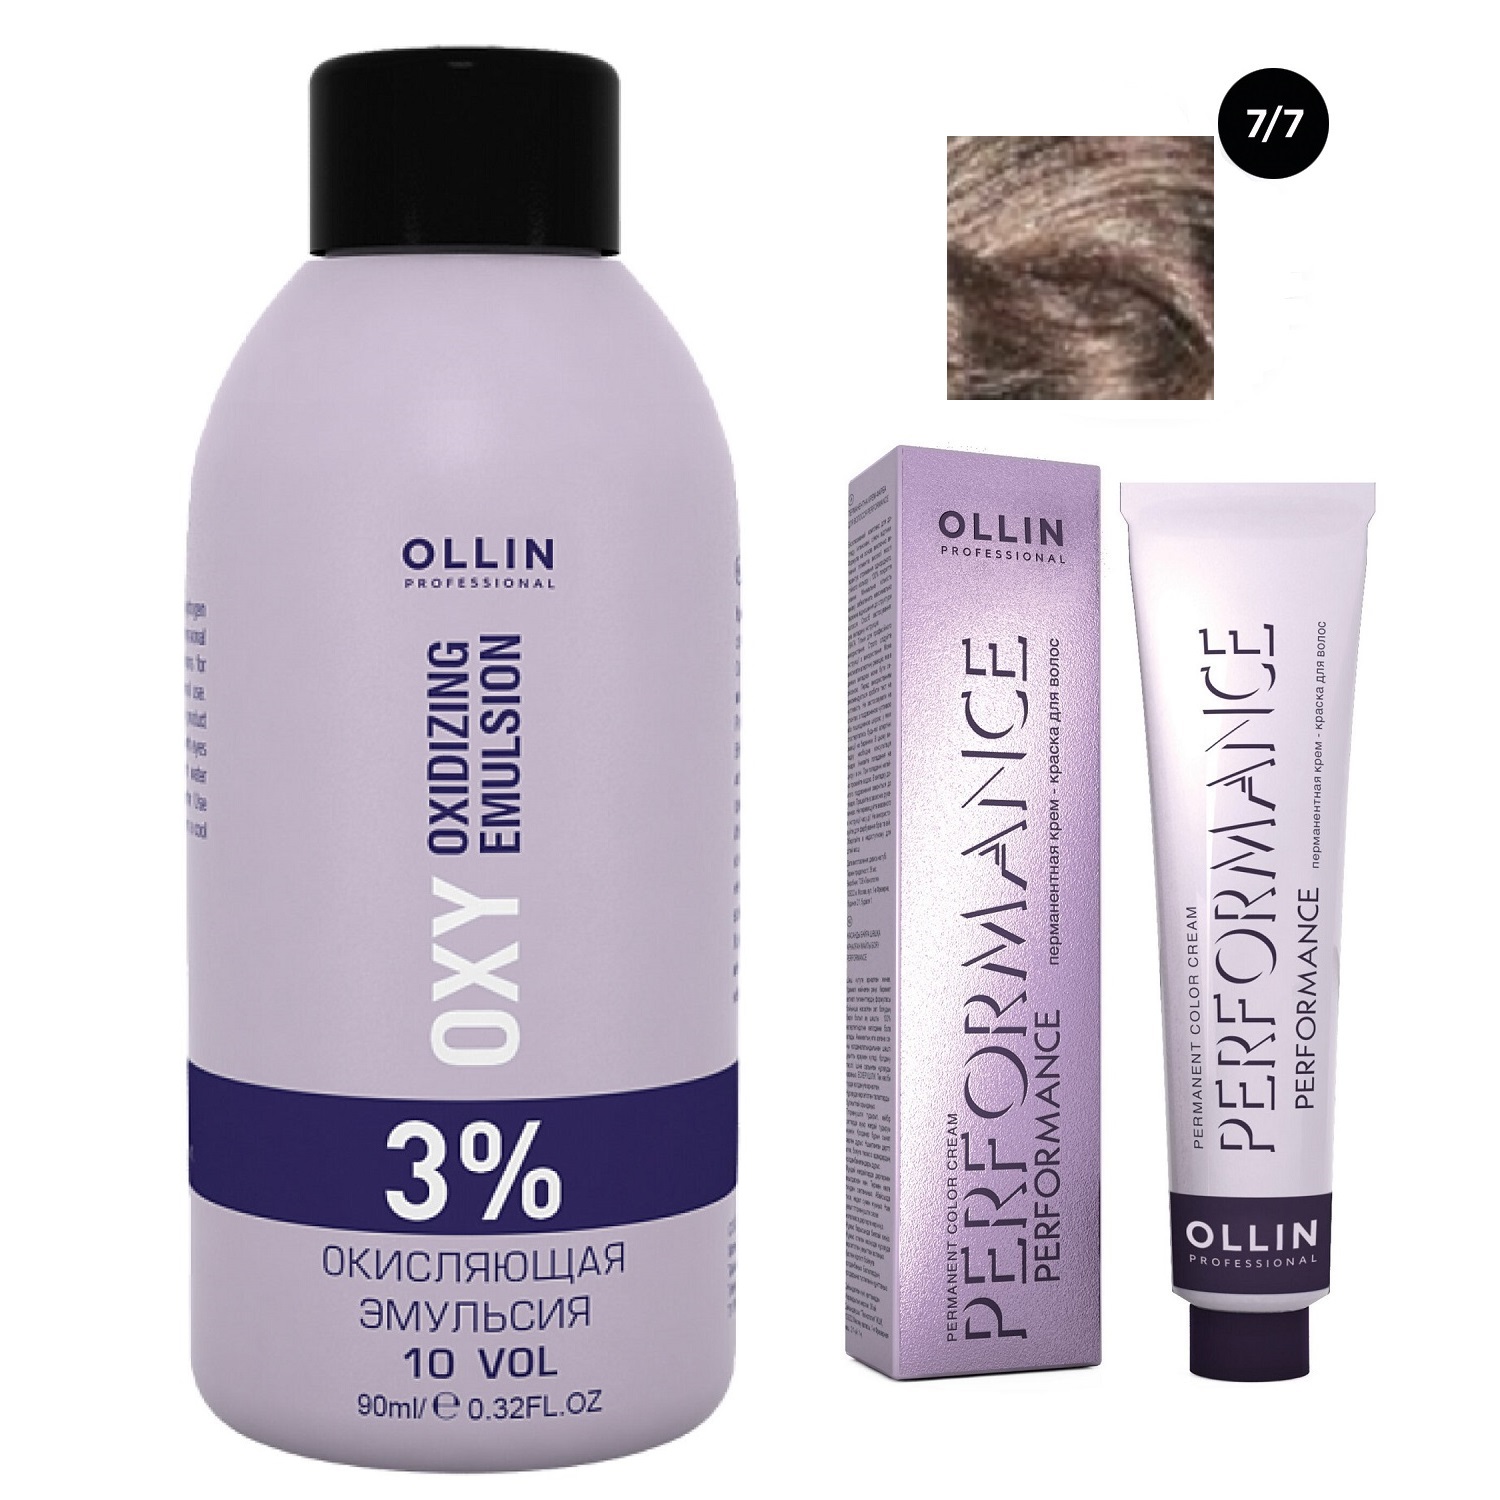 Ollin Professional Набор Перманентная крем-краска для волос Ollin Performance оттенок 7/7 русый коричневый 60 мл + Окисляющая эмульсия Oxy 3% 90 мл (Ollin Professional, Performance)